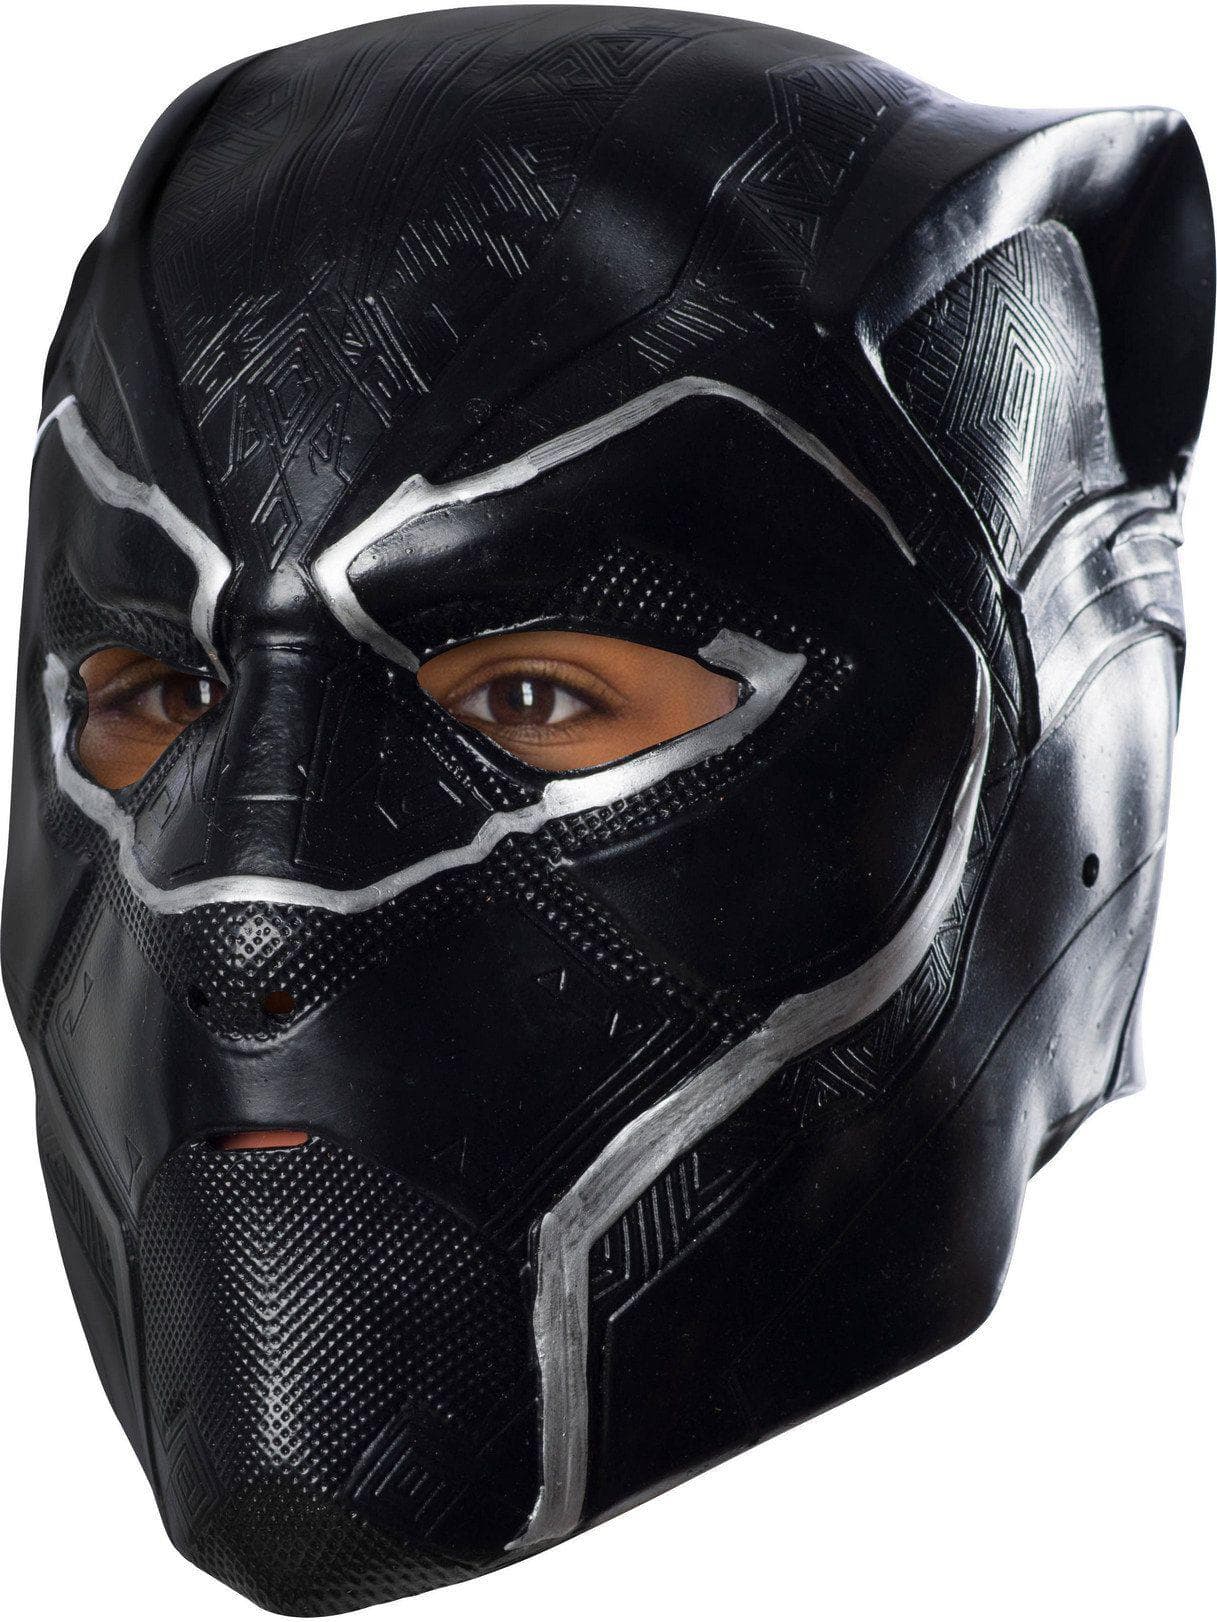 Boys' Marvel Black Panther Mask - costumes.com